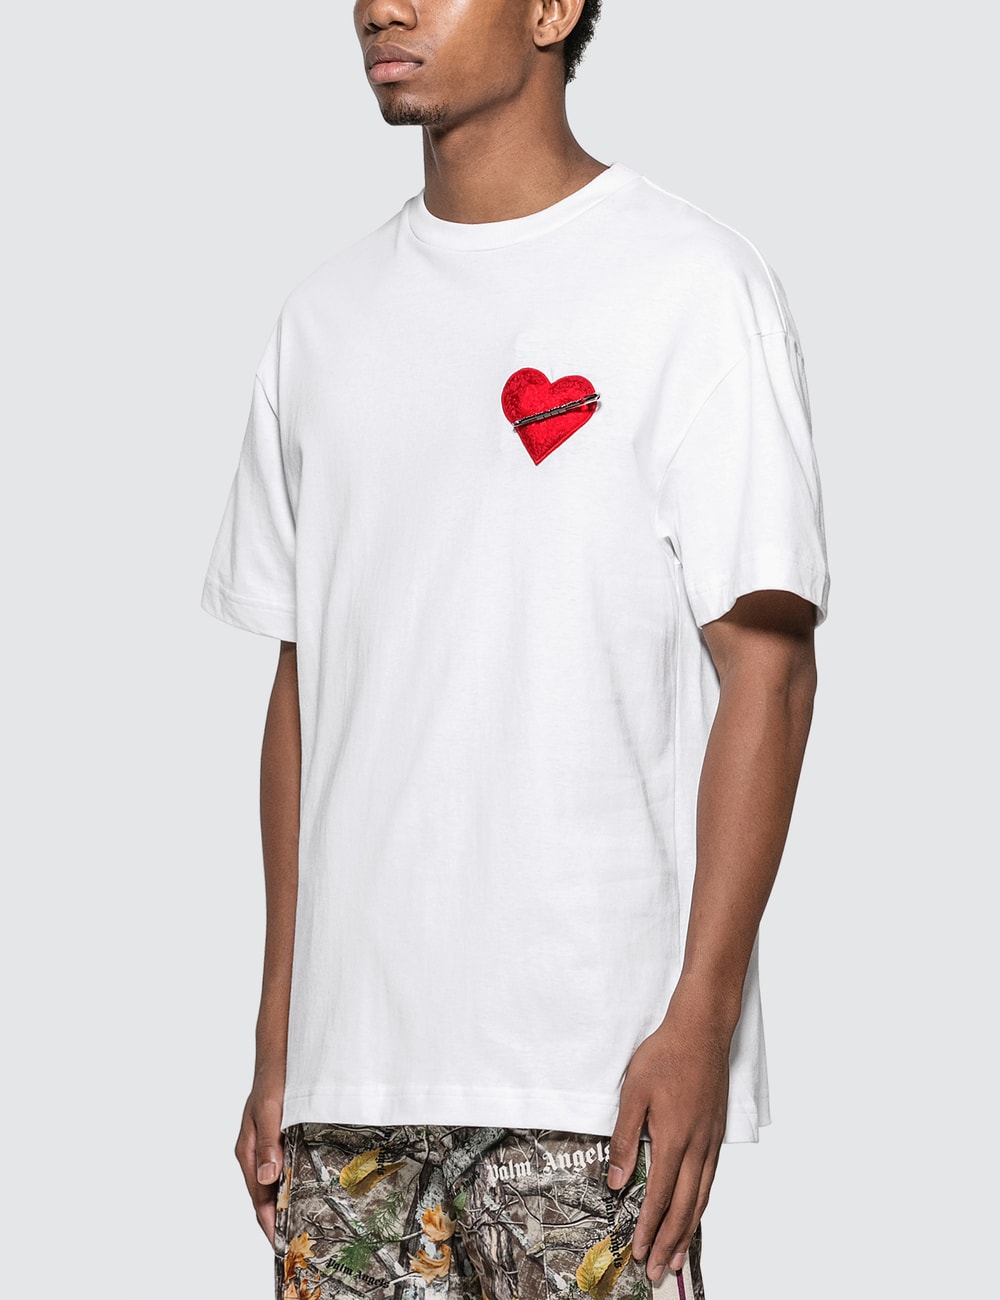 Palm Angels - Pin My Heart T-Shirt | HBX